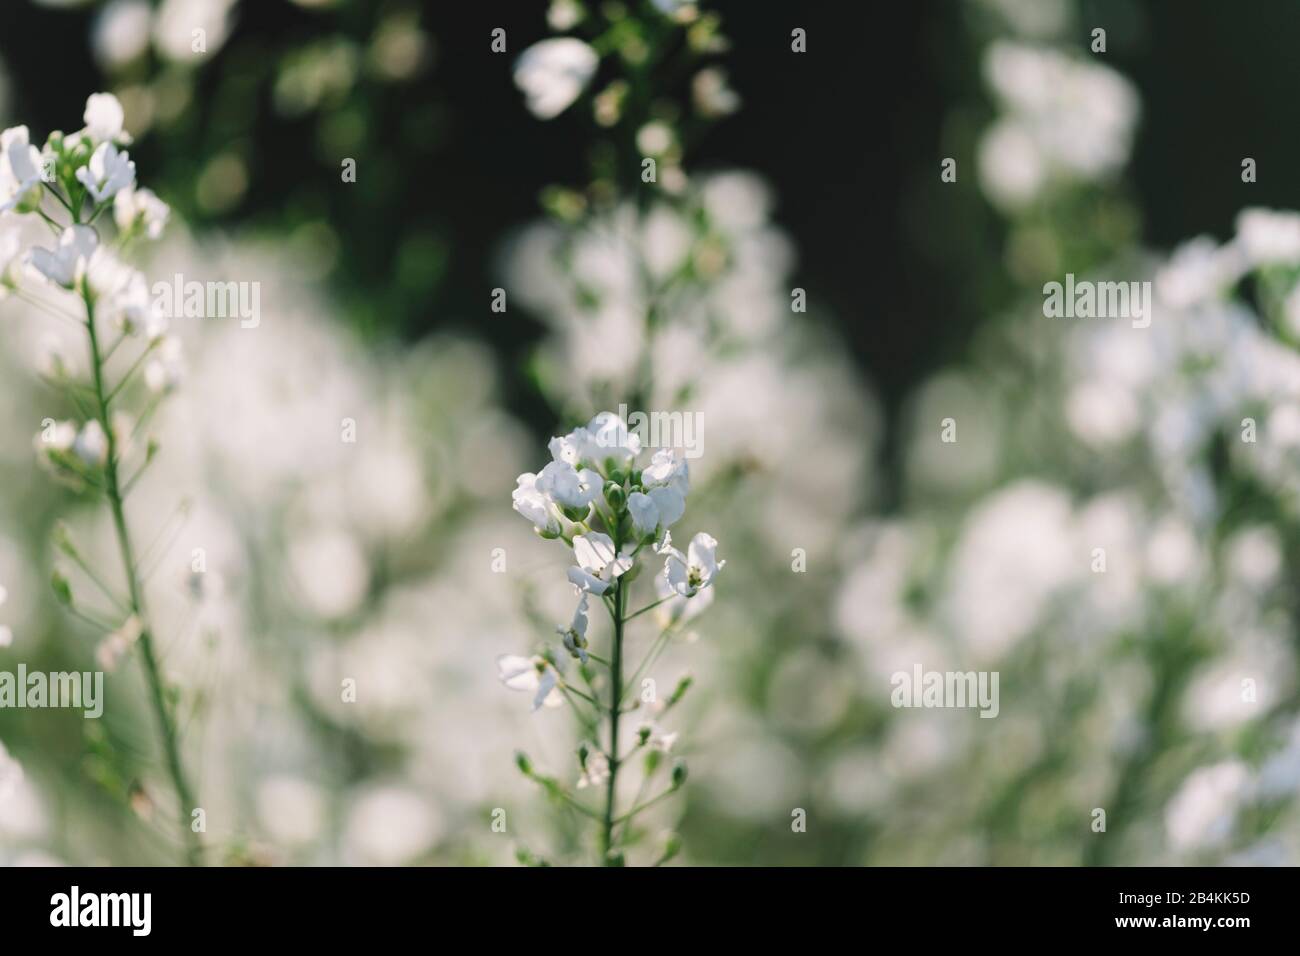 Pflanzendetails, weiße blühende Blumen, Nahaufnahme Stockfoto